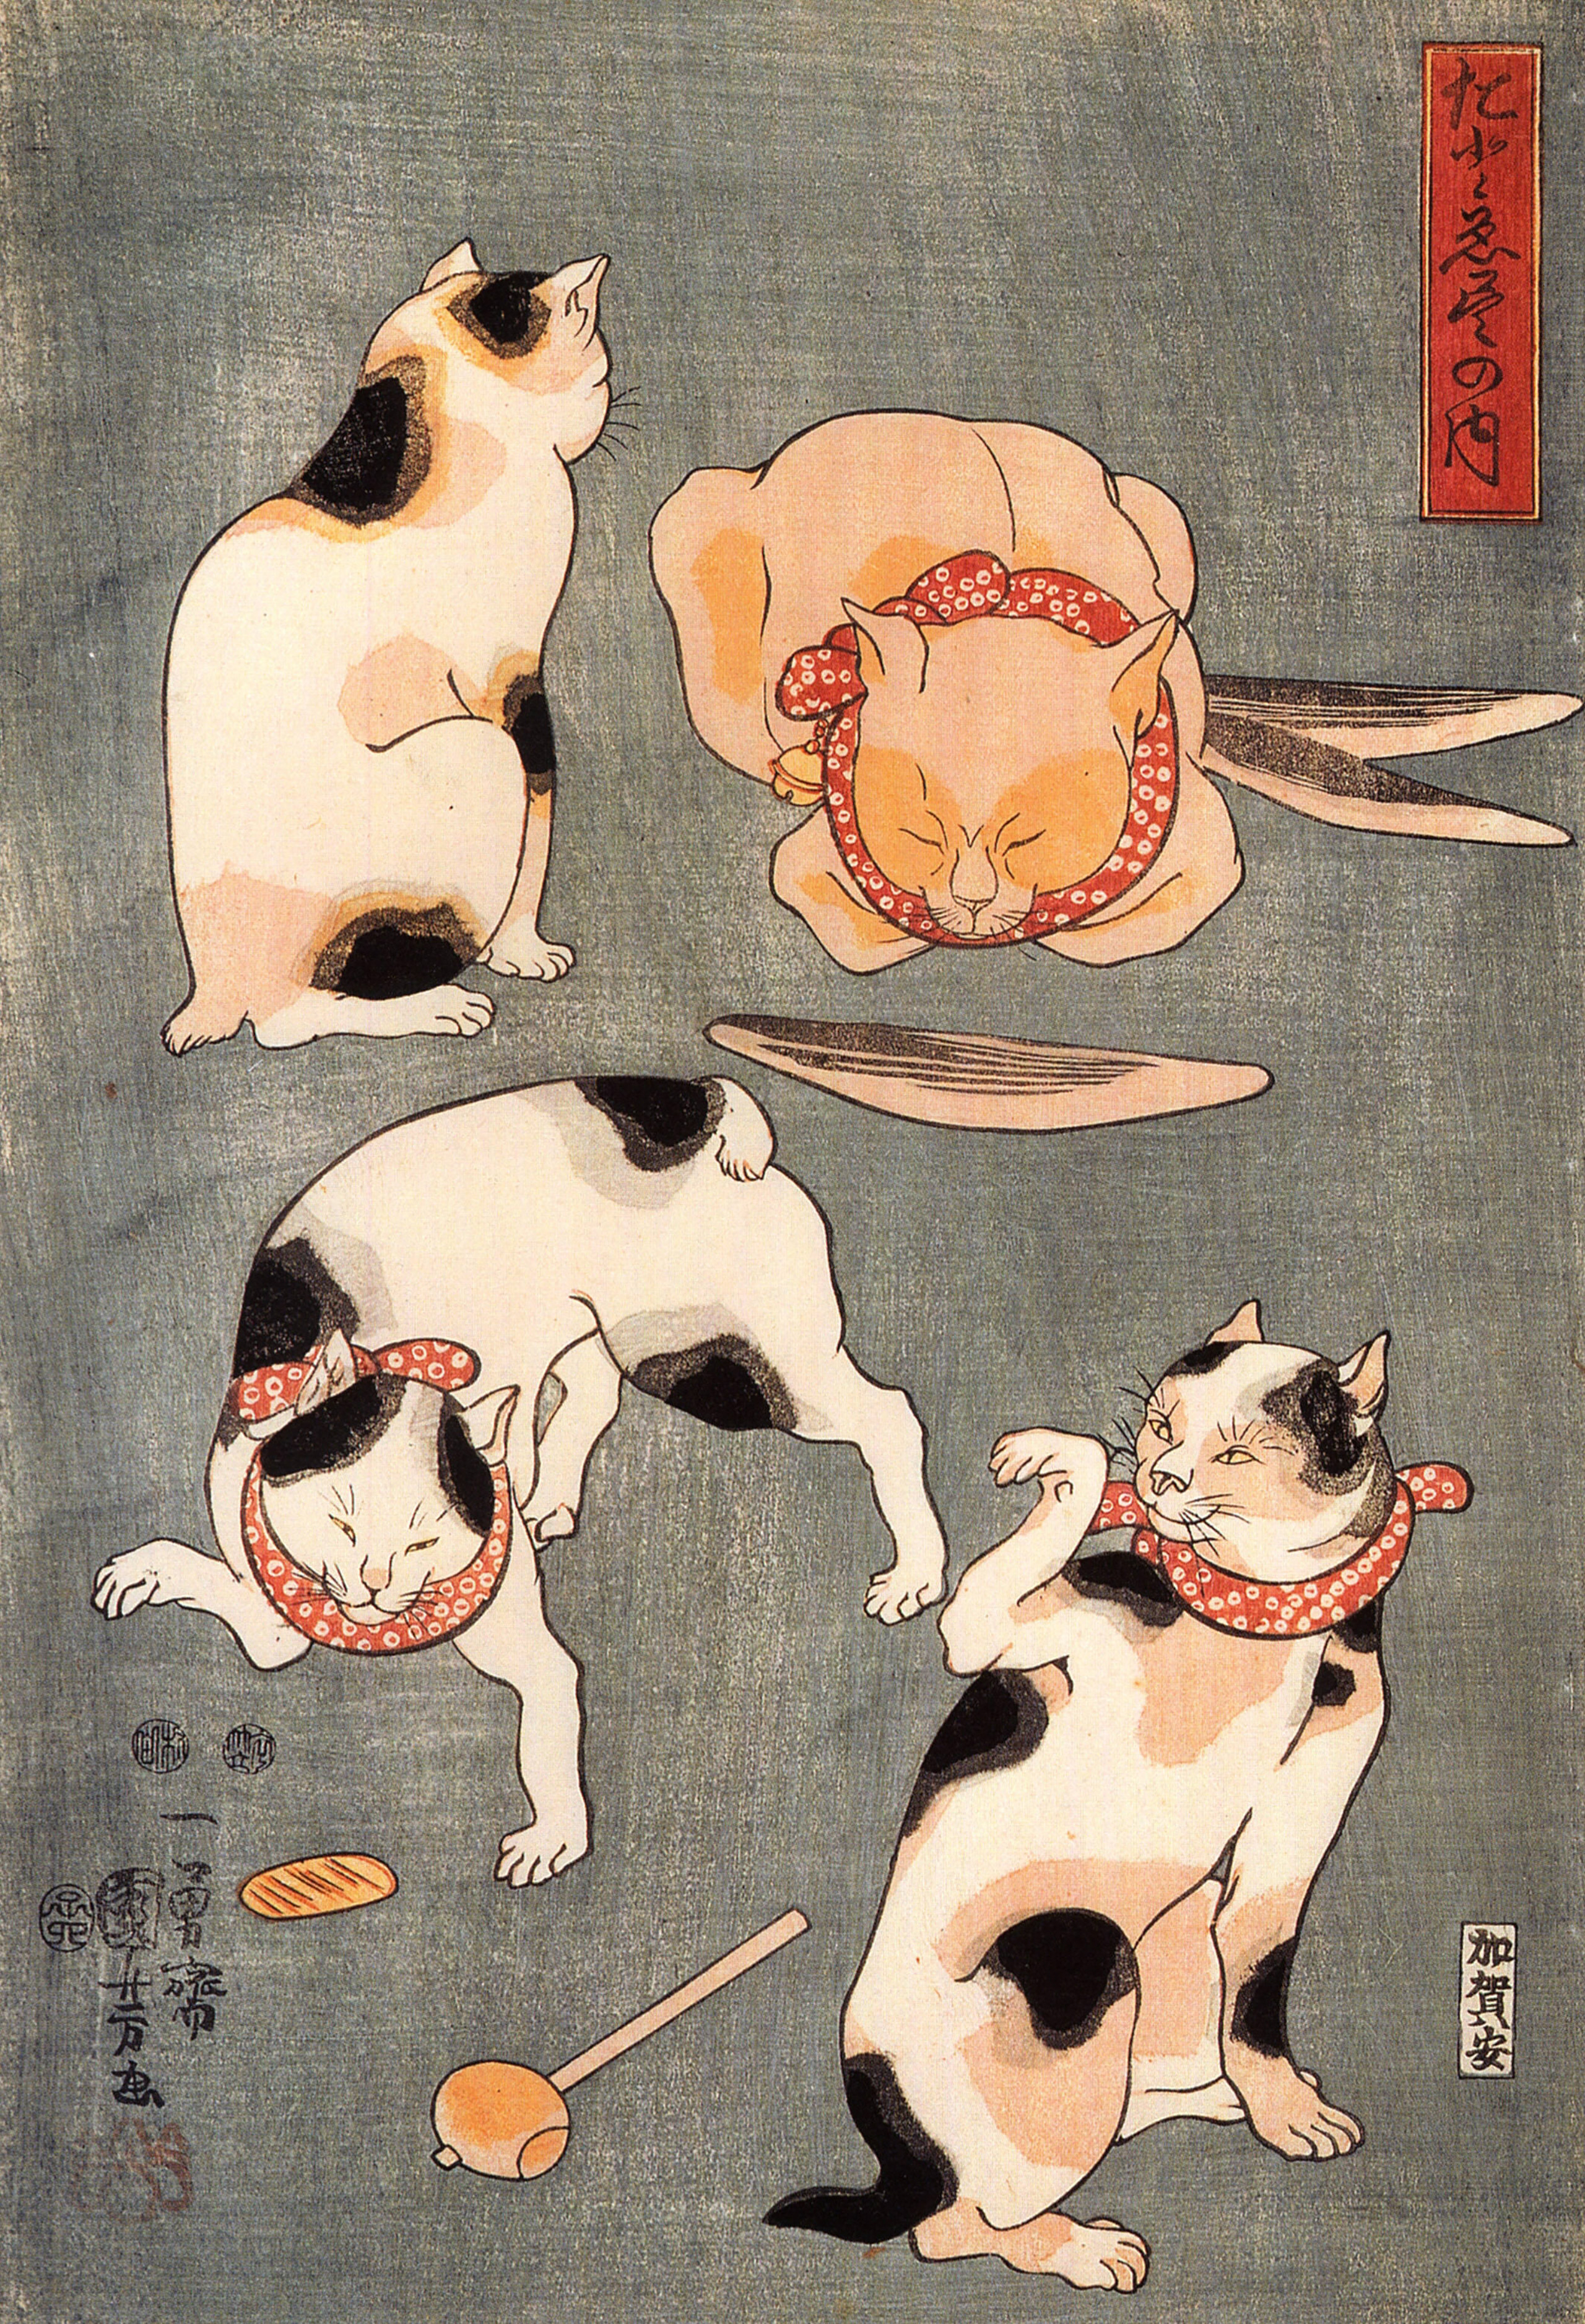 ukiyo-e of 4 cats playing